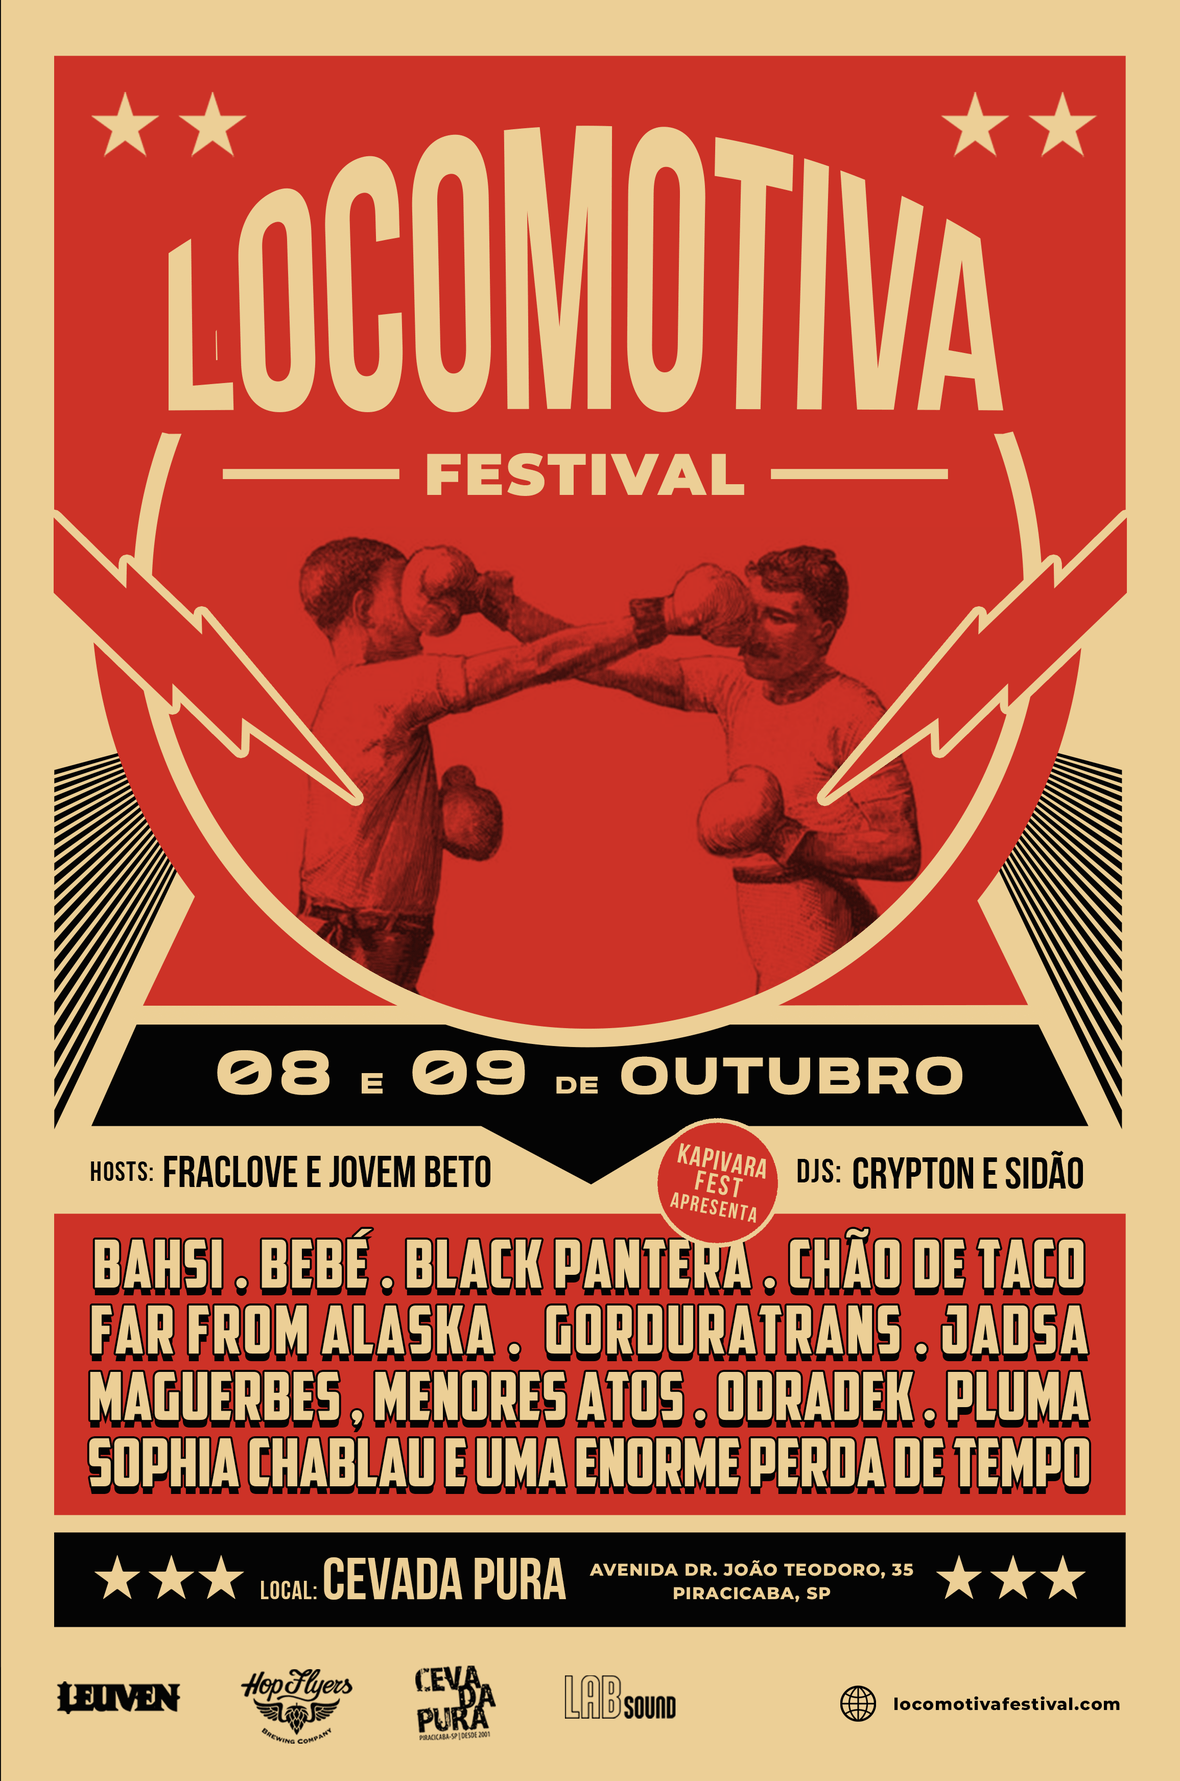 Locomotiva Festival 2022 traz 12 bandas em alta da música alternativa e independente nacional